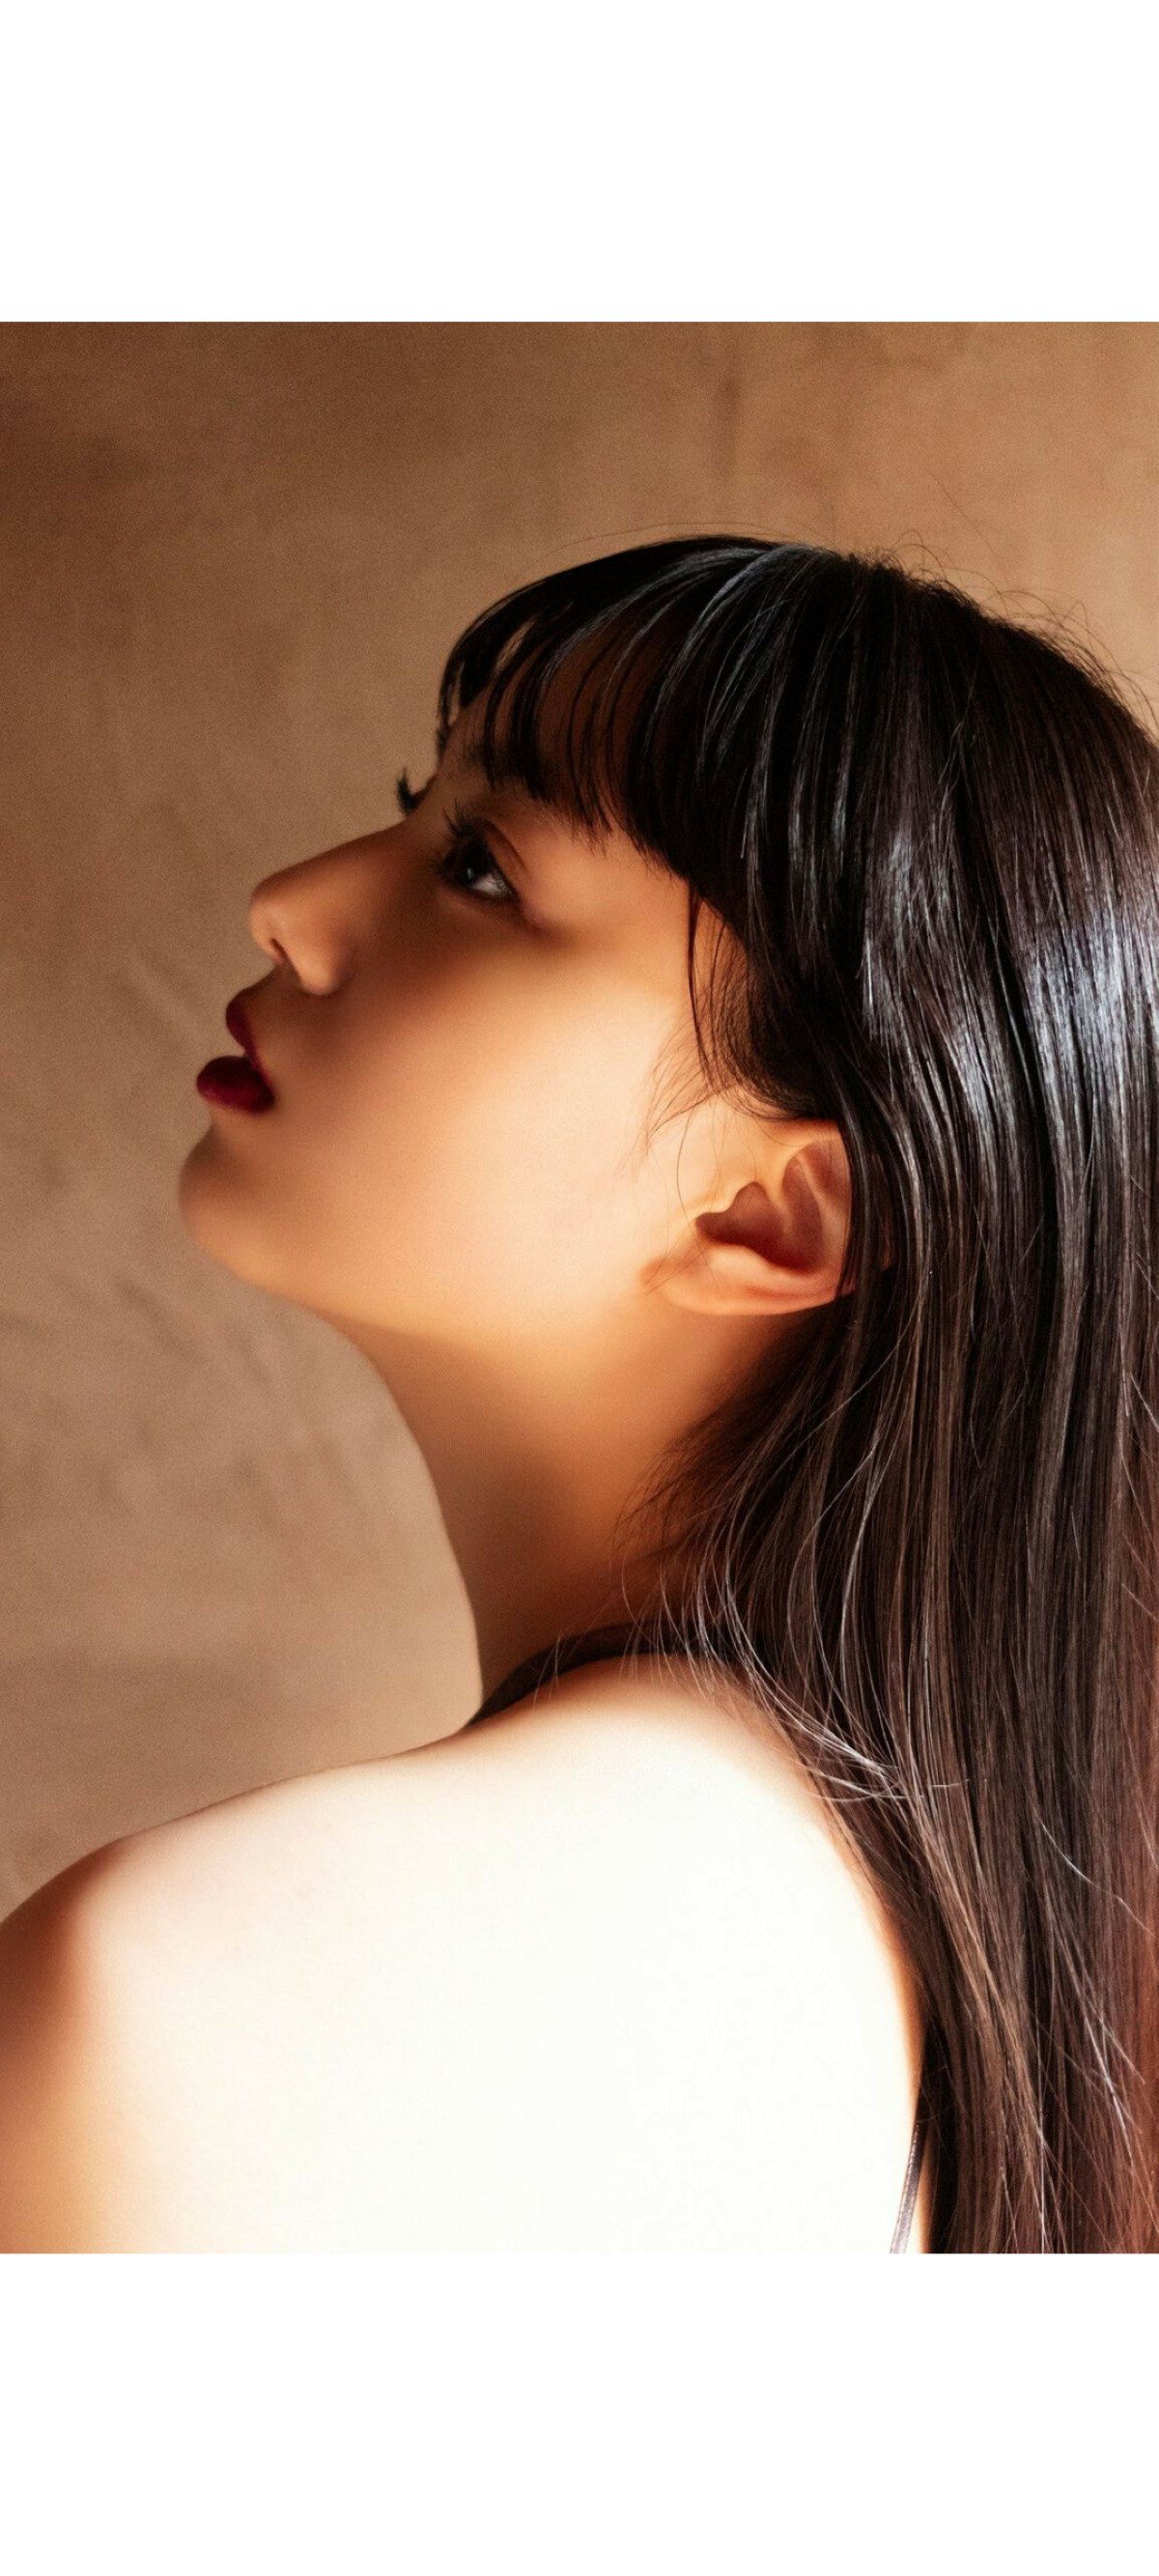 Weekly Photobook 2020 12 07 Noa Tsurushima 鶴嶋乃愛 A natural actress 生まれながらにして女優 0053 4278504837.jpg